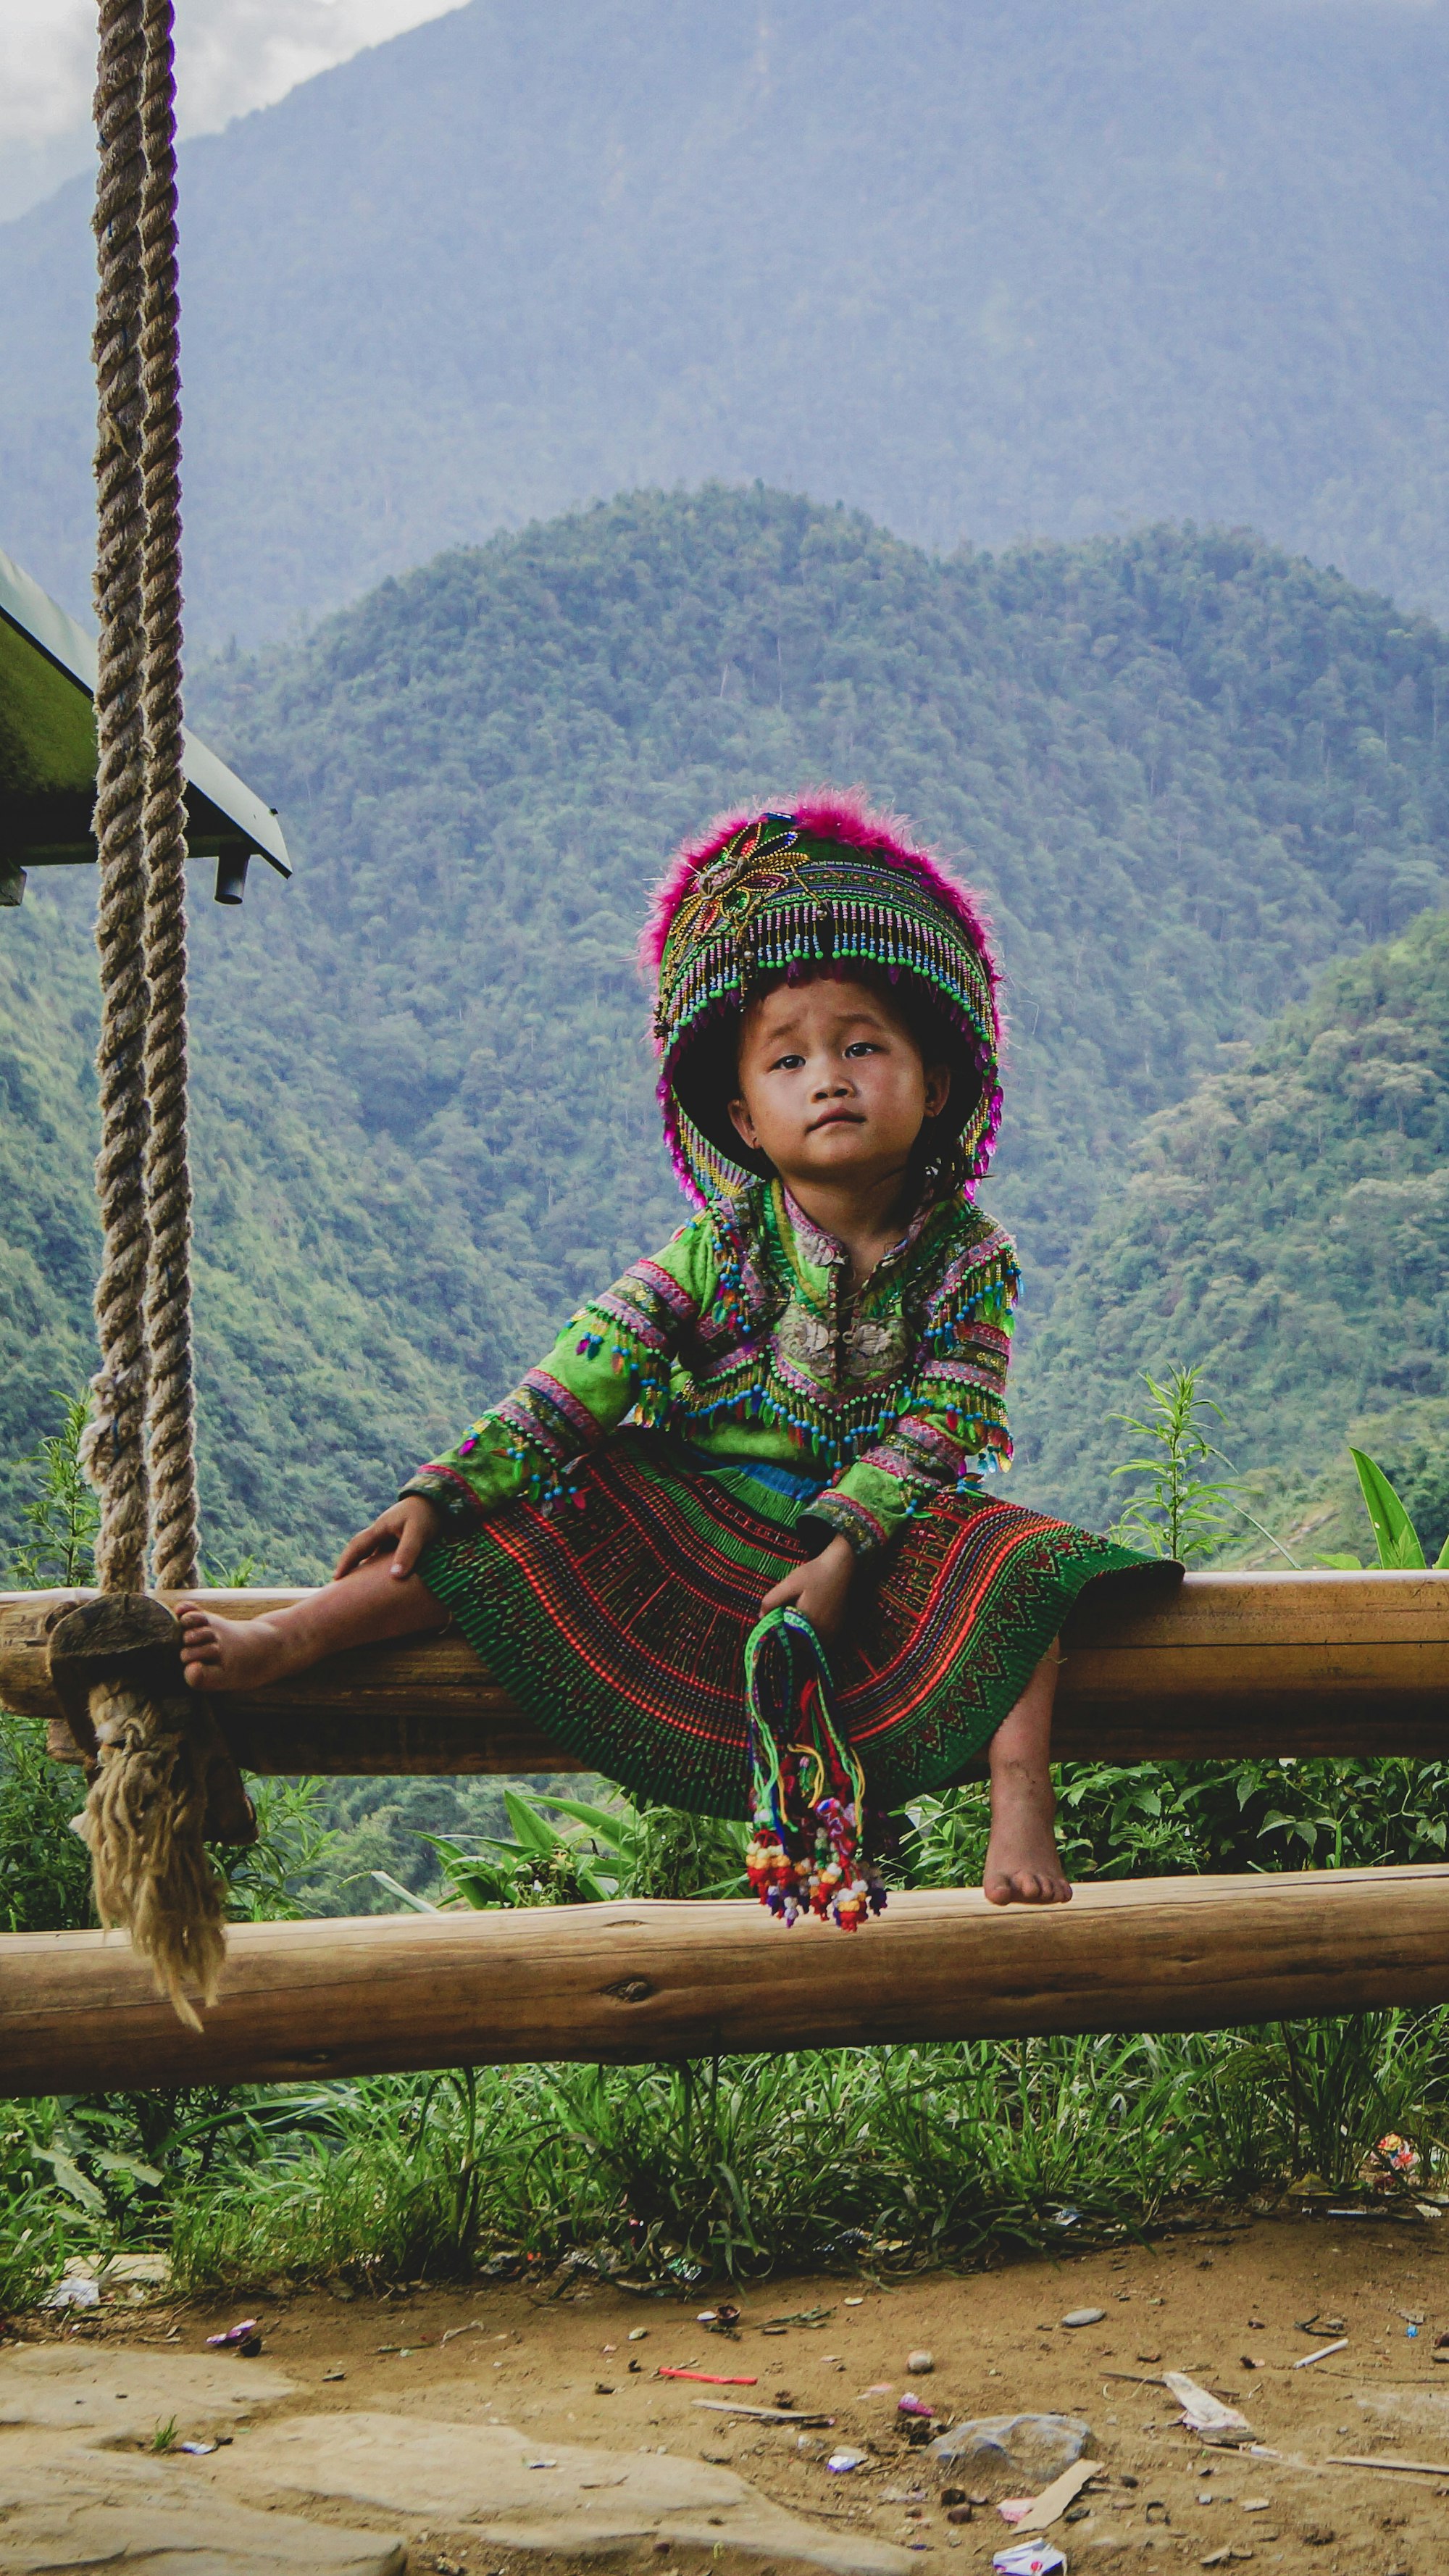 The Hmong girl